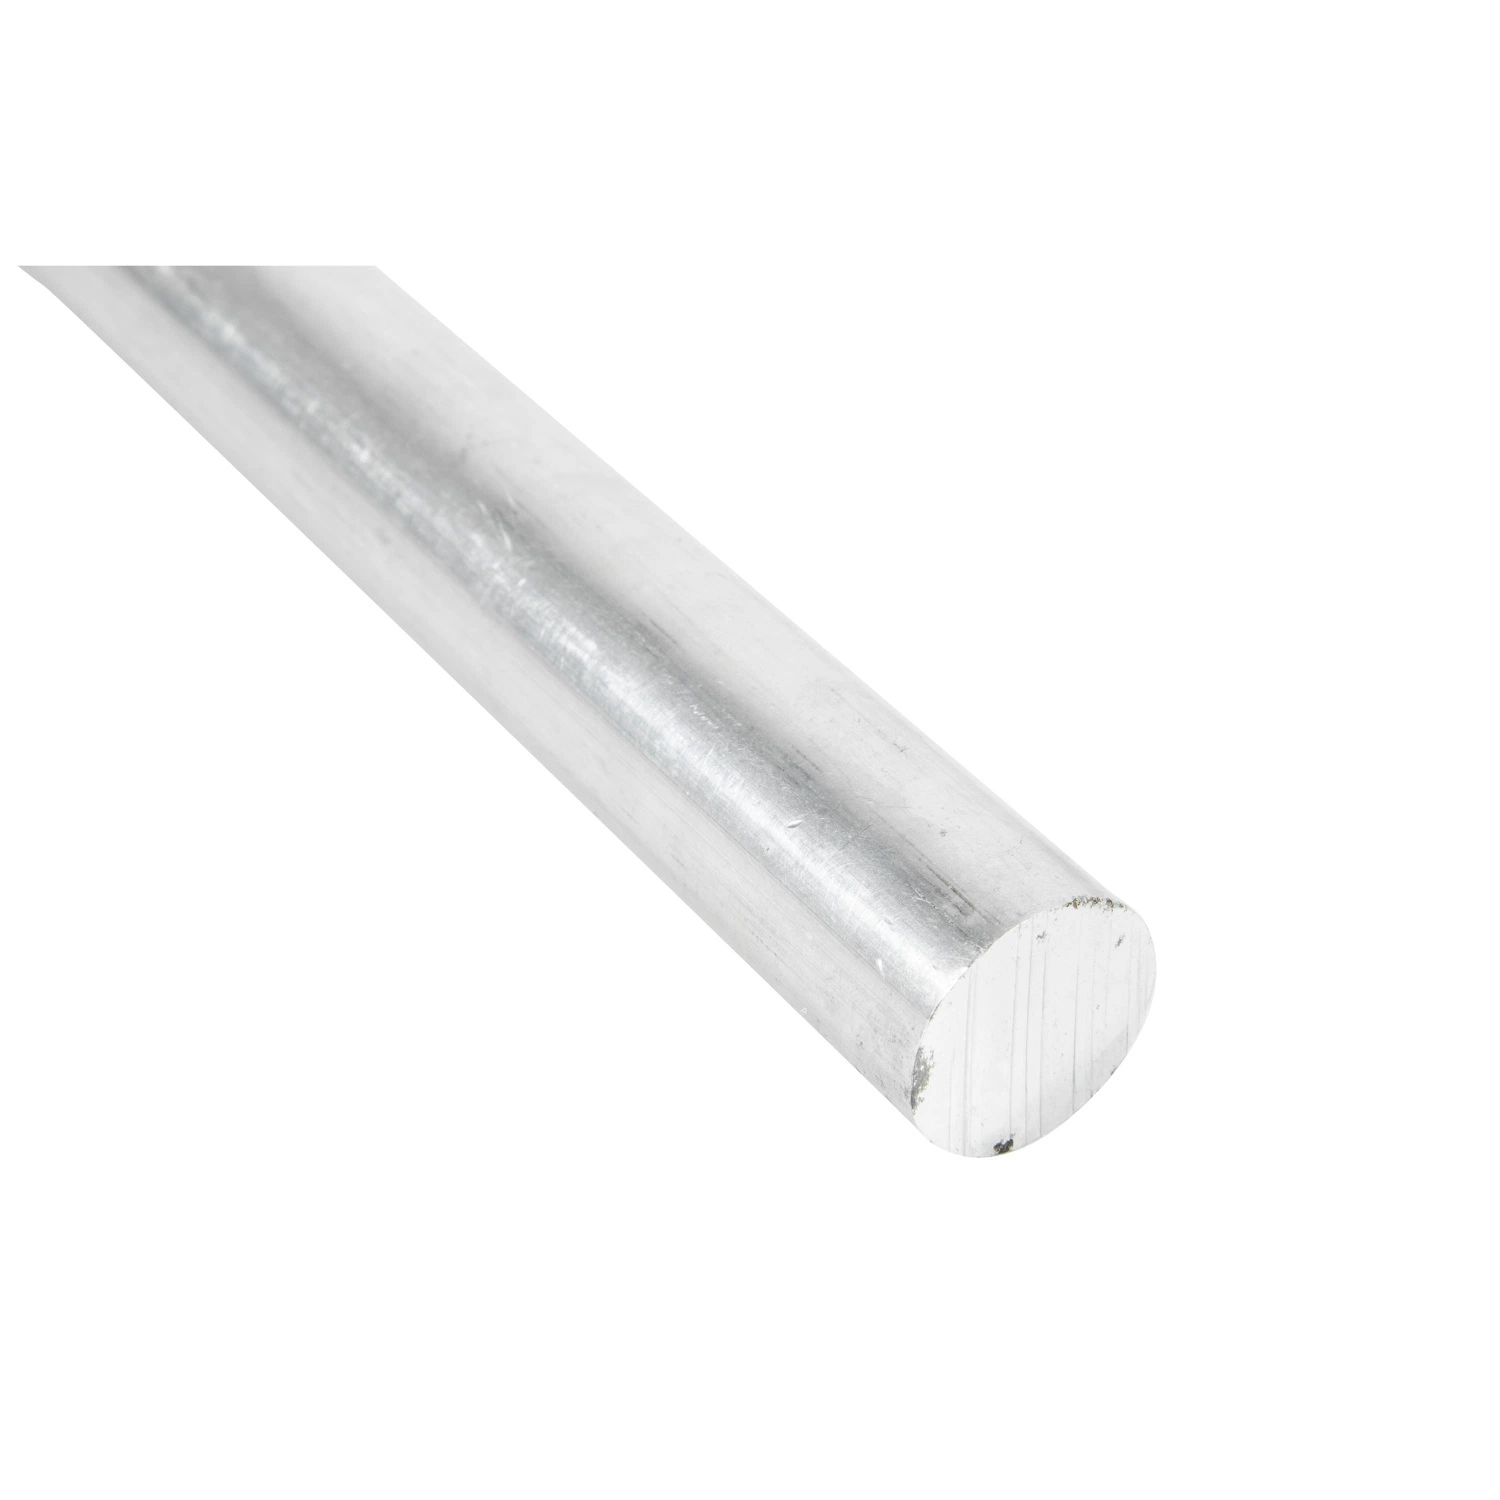 LED Aluminum Profile and LED Light Aluminium Bar